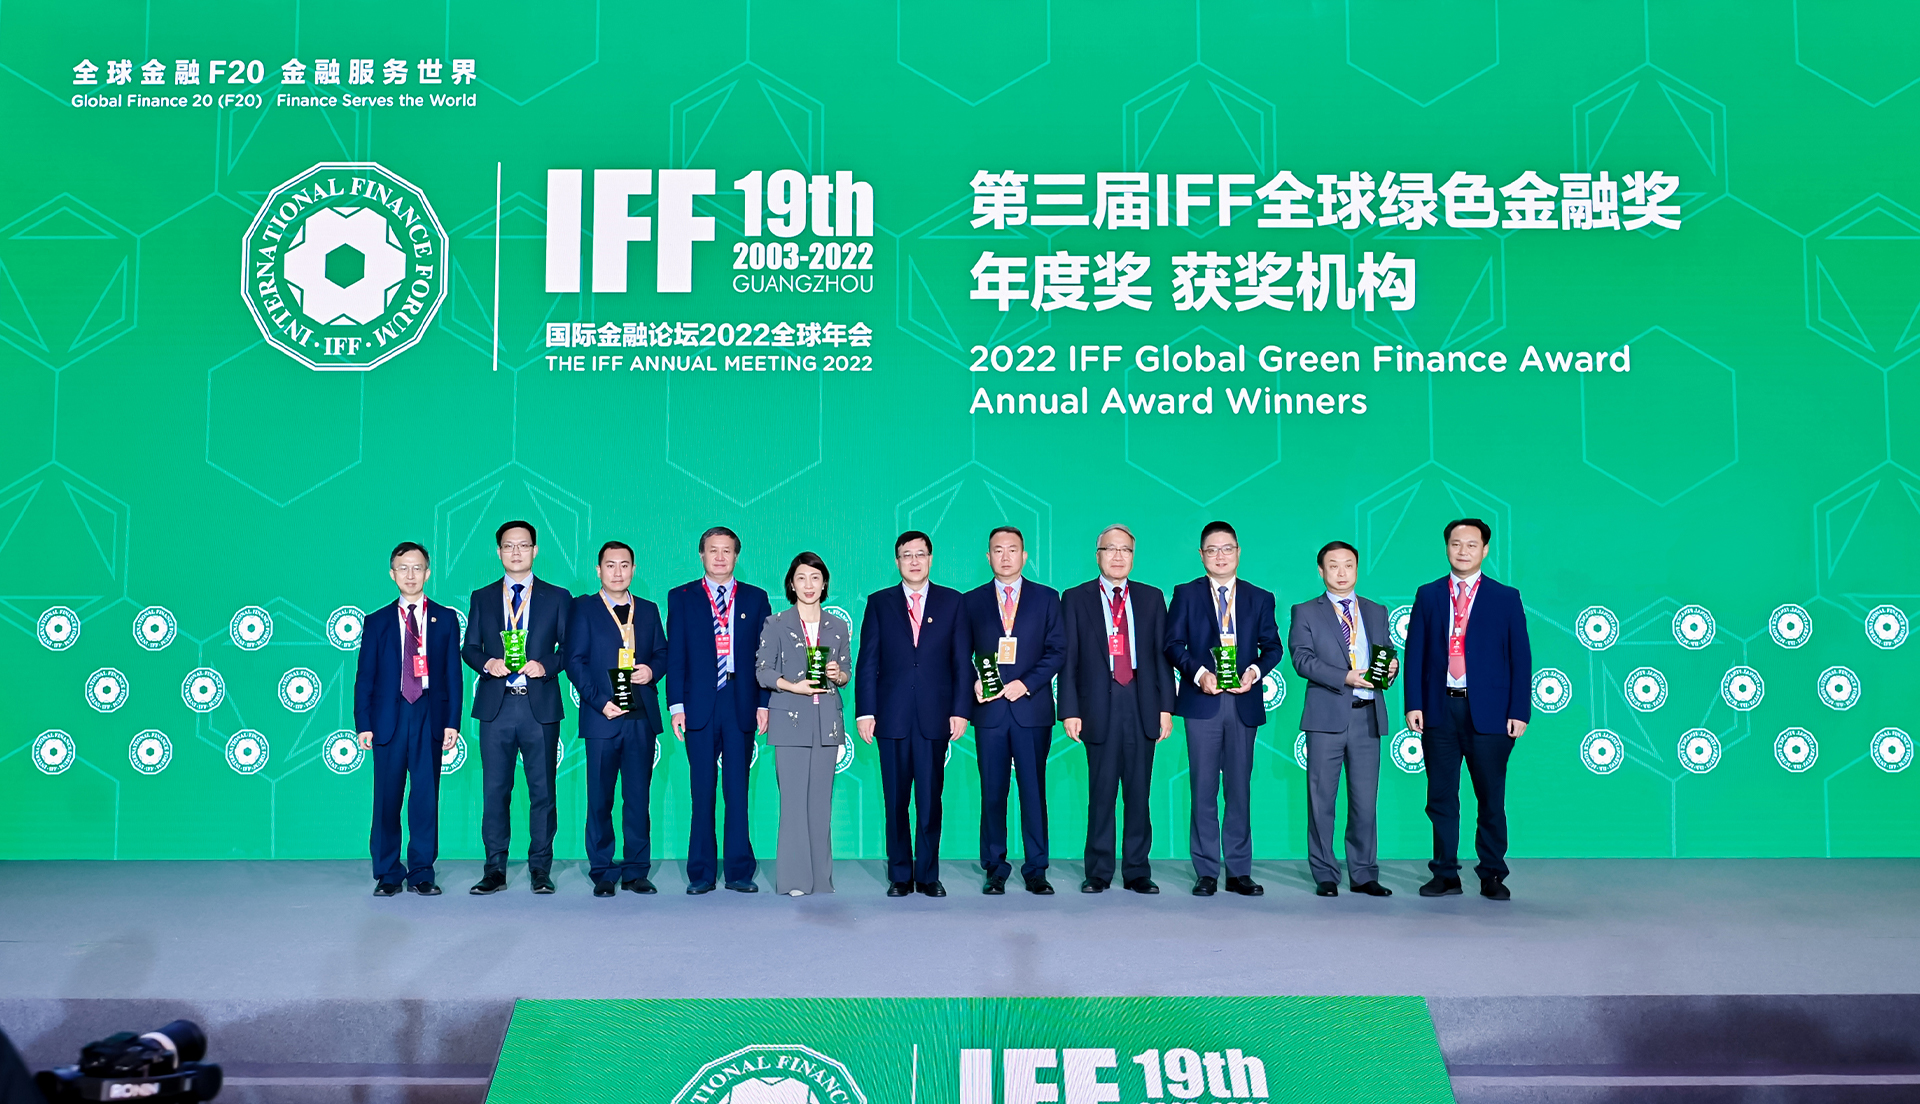 国际金融论坛(IFF)第19届全球年会第三届IFF全球绿色金融奖年度奖颁奖合影